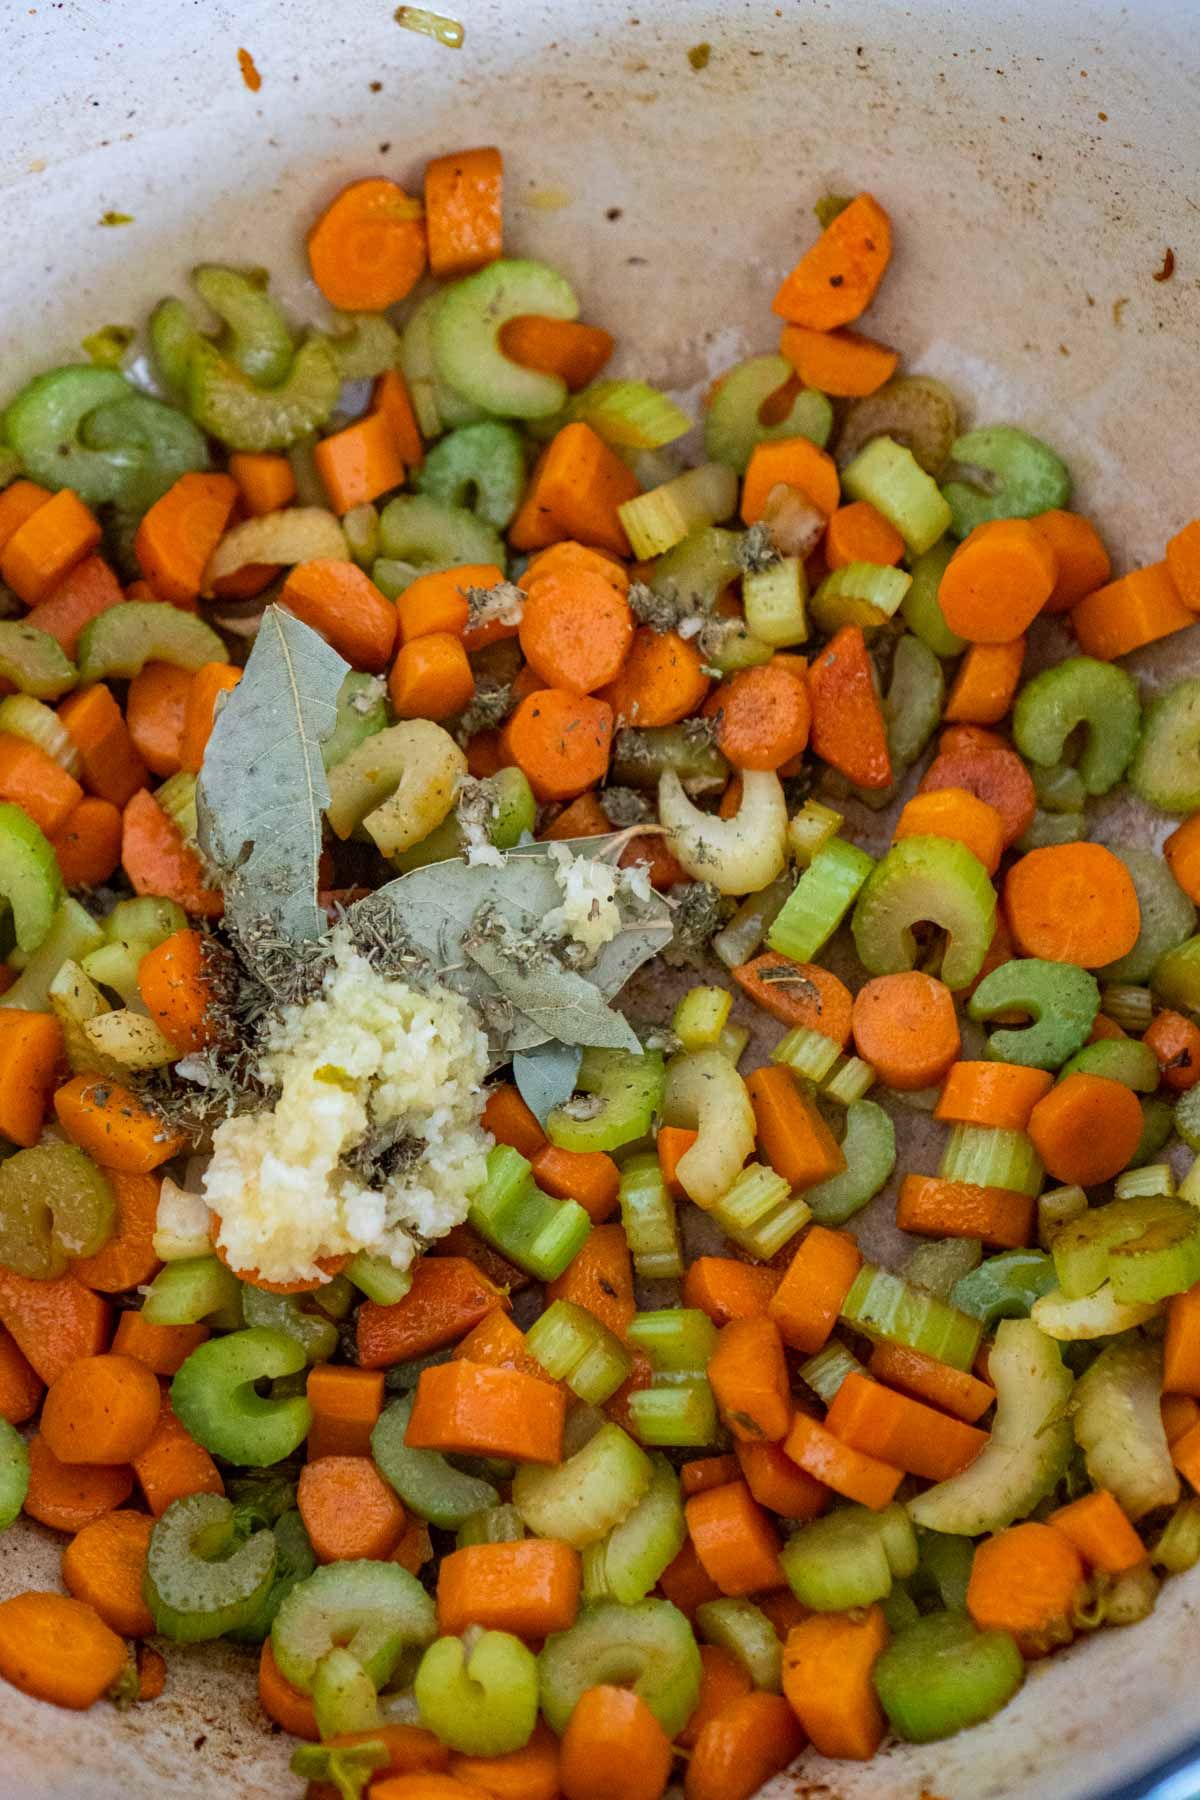 अजवाइन और गाजर के बर्तन में मसाले डाले जाते हैं